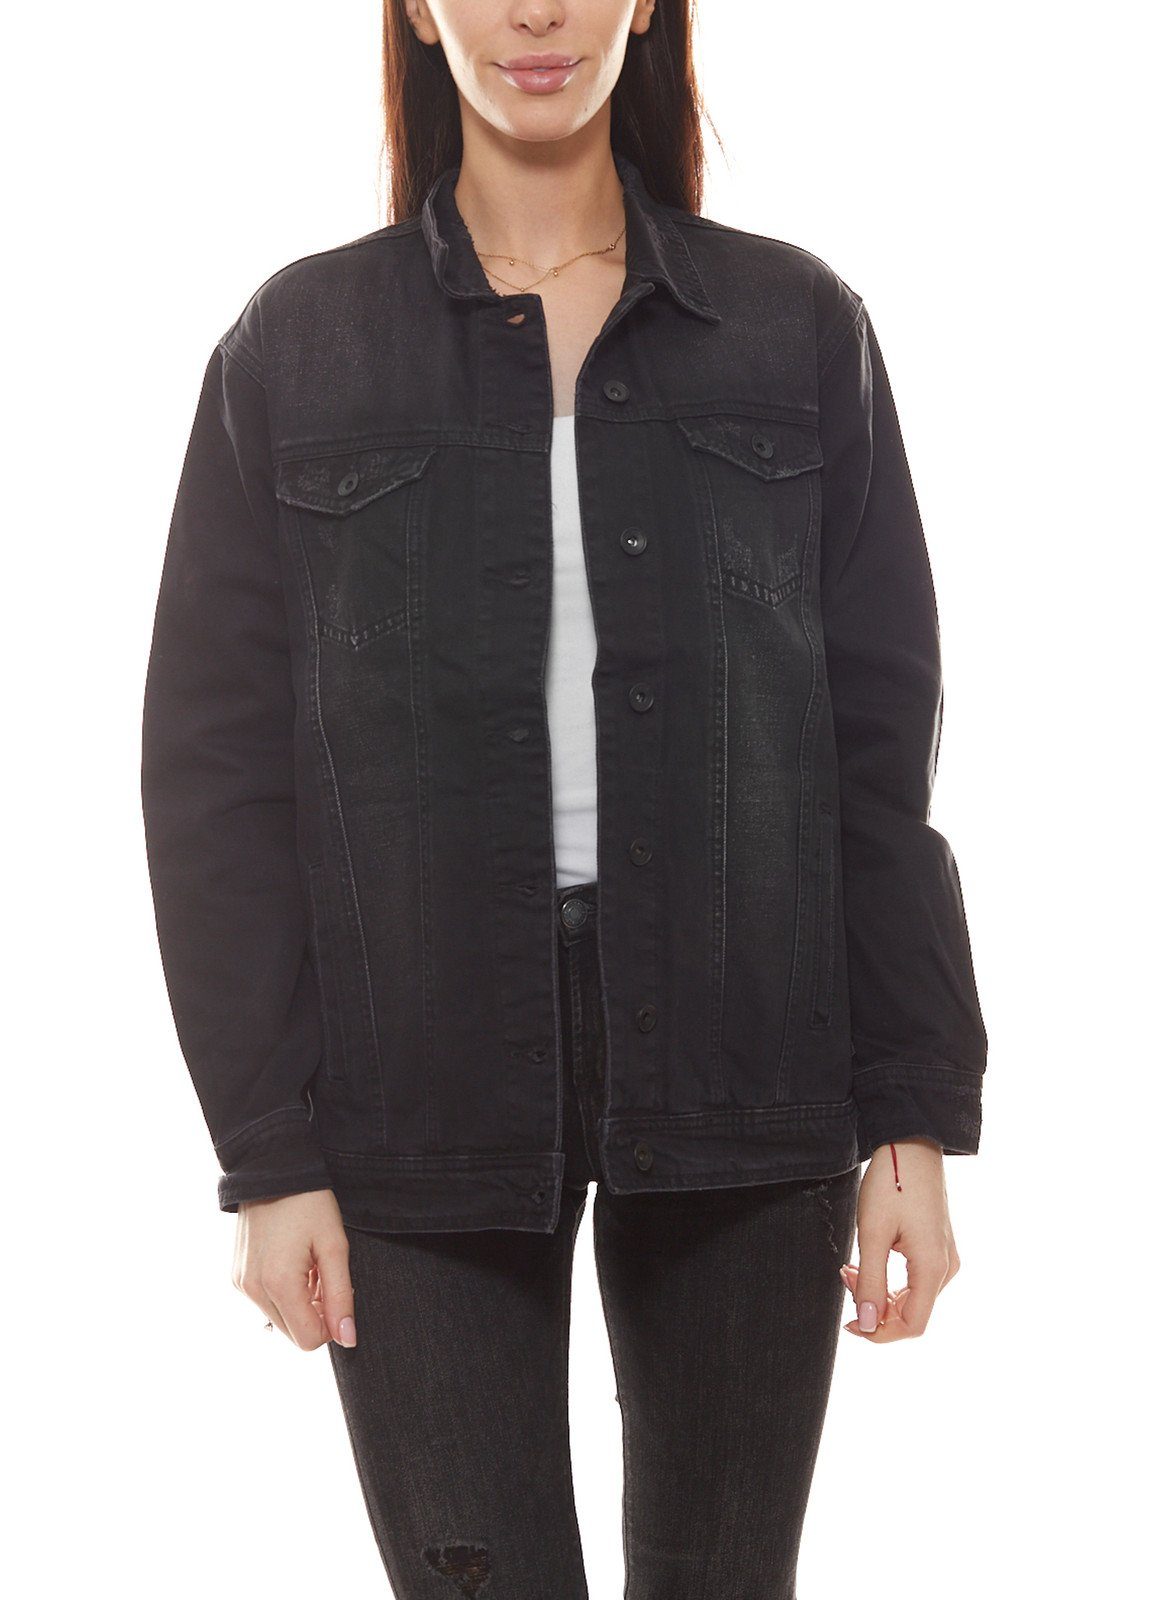 eksept Jeansjacke »eksept Beetle Denim-Jacke verwaschene Damen Jeans-Jacke  mit Knopfleiste Herbst-Jacke Grau« online kaufen | OTTO